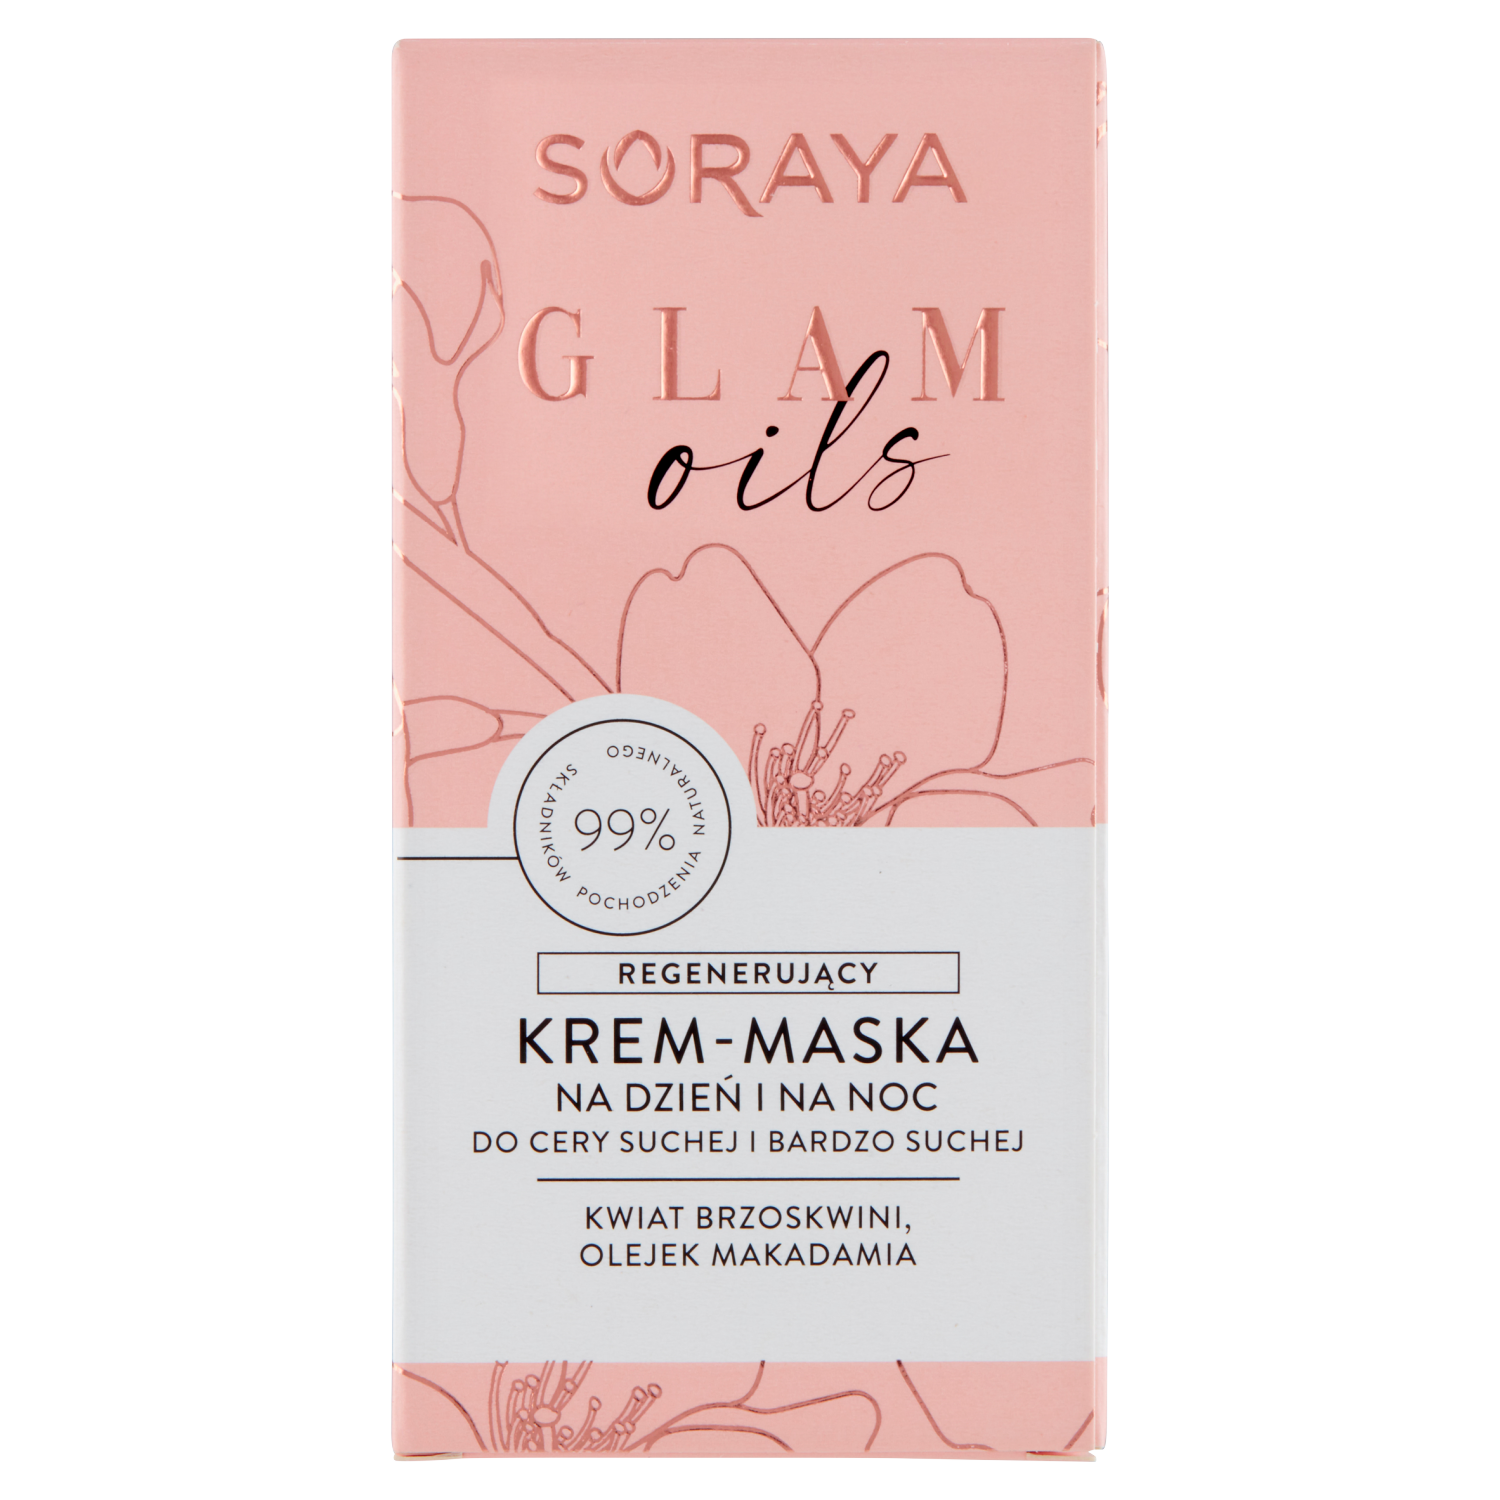 Soraya Glam Oils регенерирующая крем-маска для лица на ночь, 50 мл